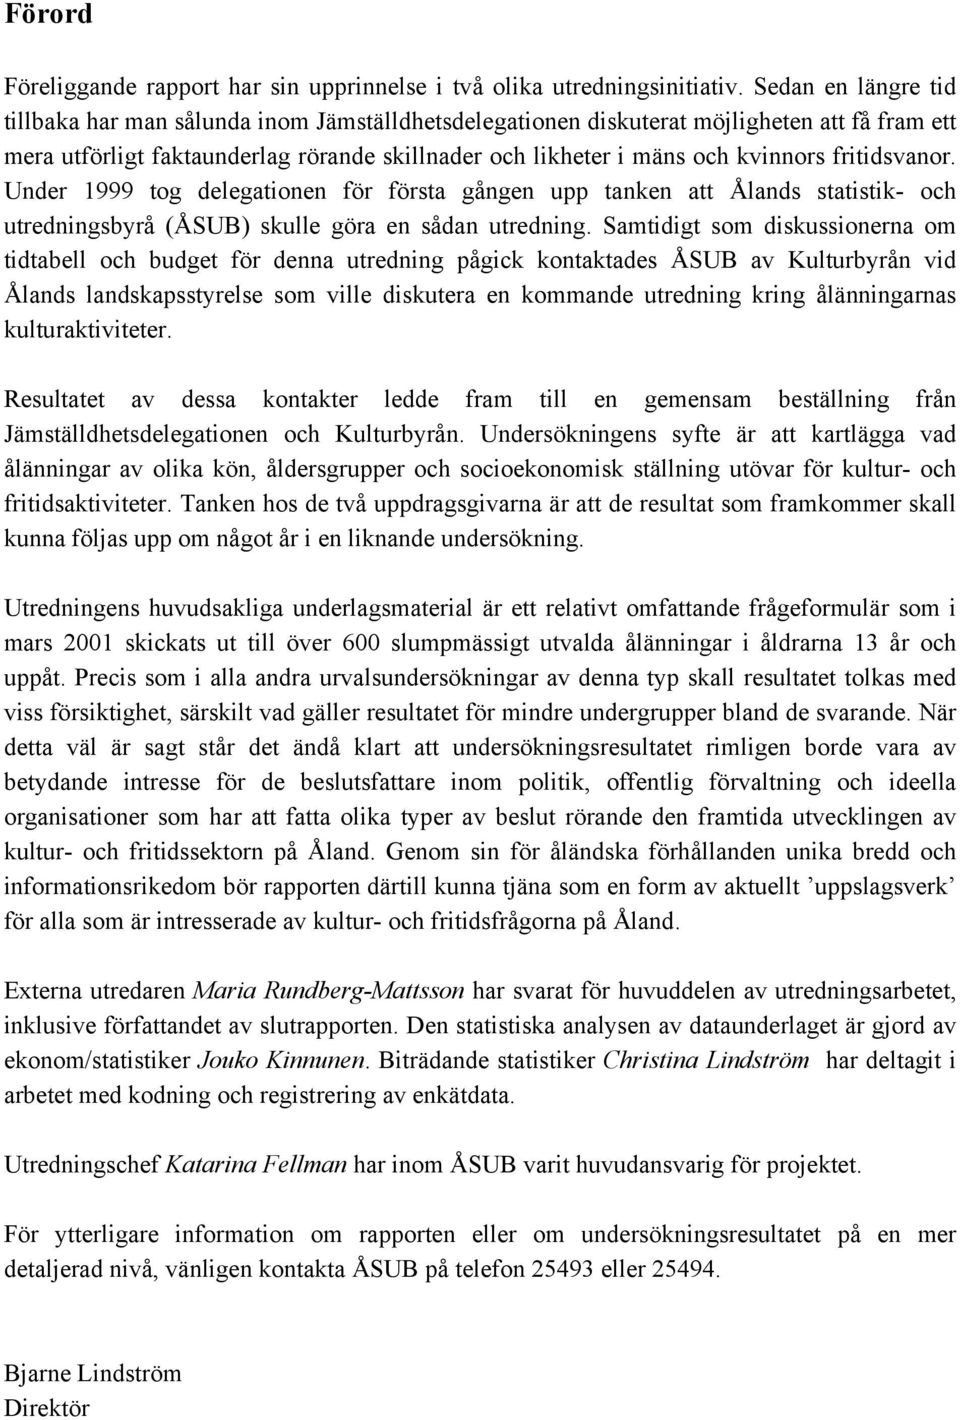 fritidsvanor. Under 1999 tog delegationen för första gången upp tanken att Ålands statistik- och utredningsbyrå (ÅSUB) skulle göra en sådan utredning.